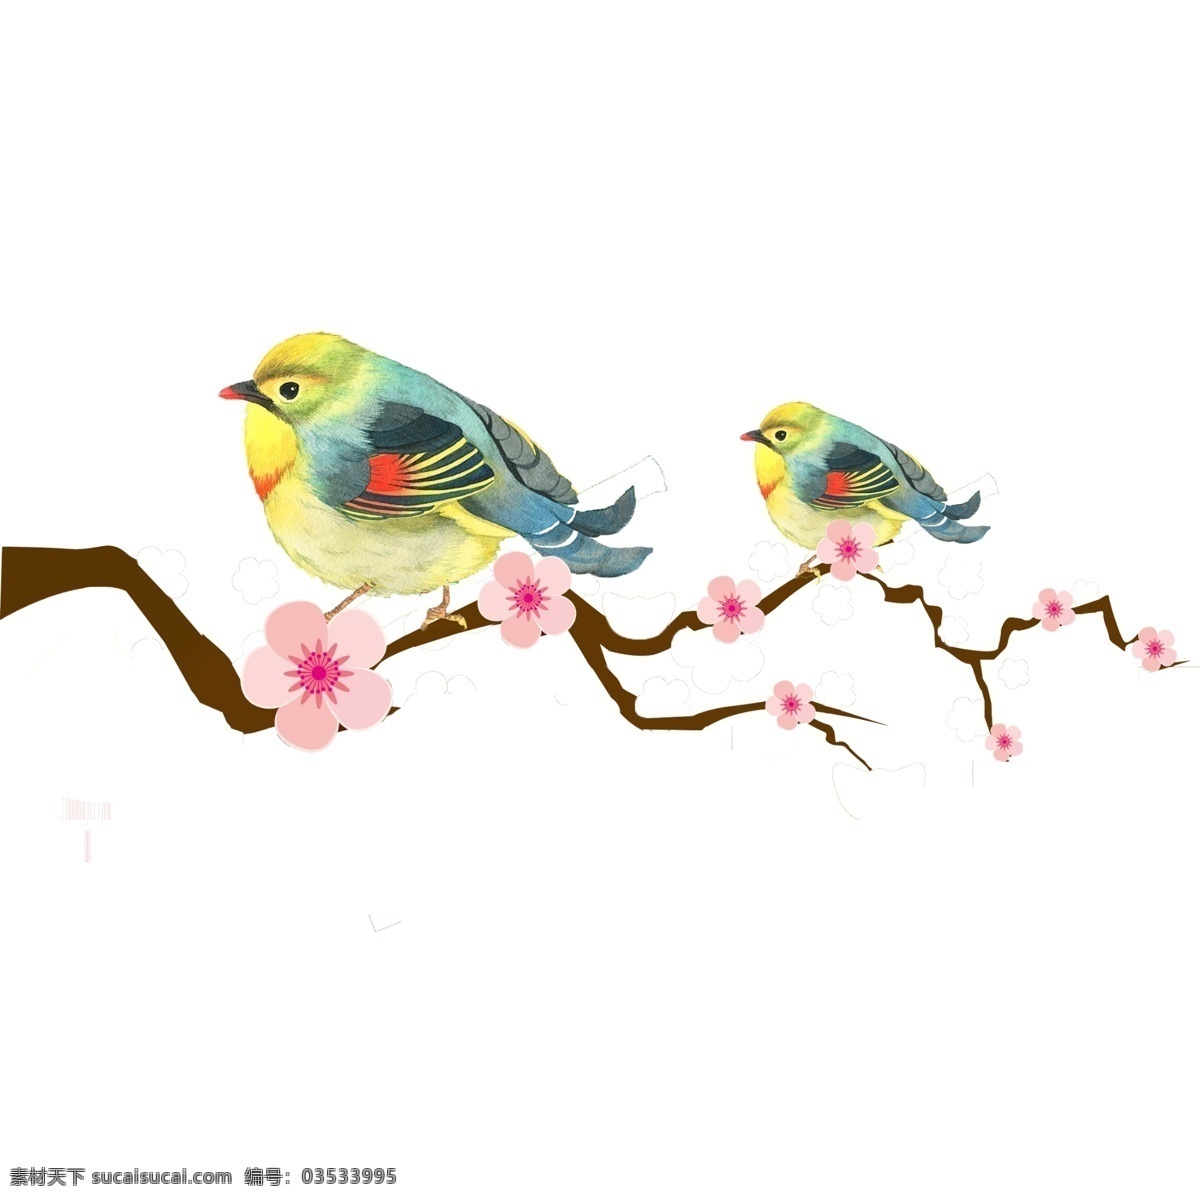 梅花 枝头 上 小鸟 花瓣 蓝色 红色 动物 创意设计 树枝 粉色 不规则图形 飞翔 植物 卡通手绘